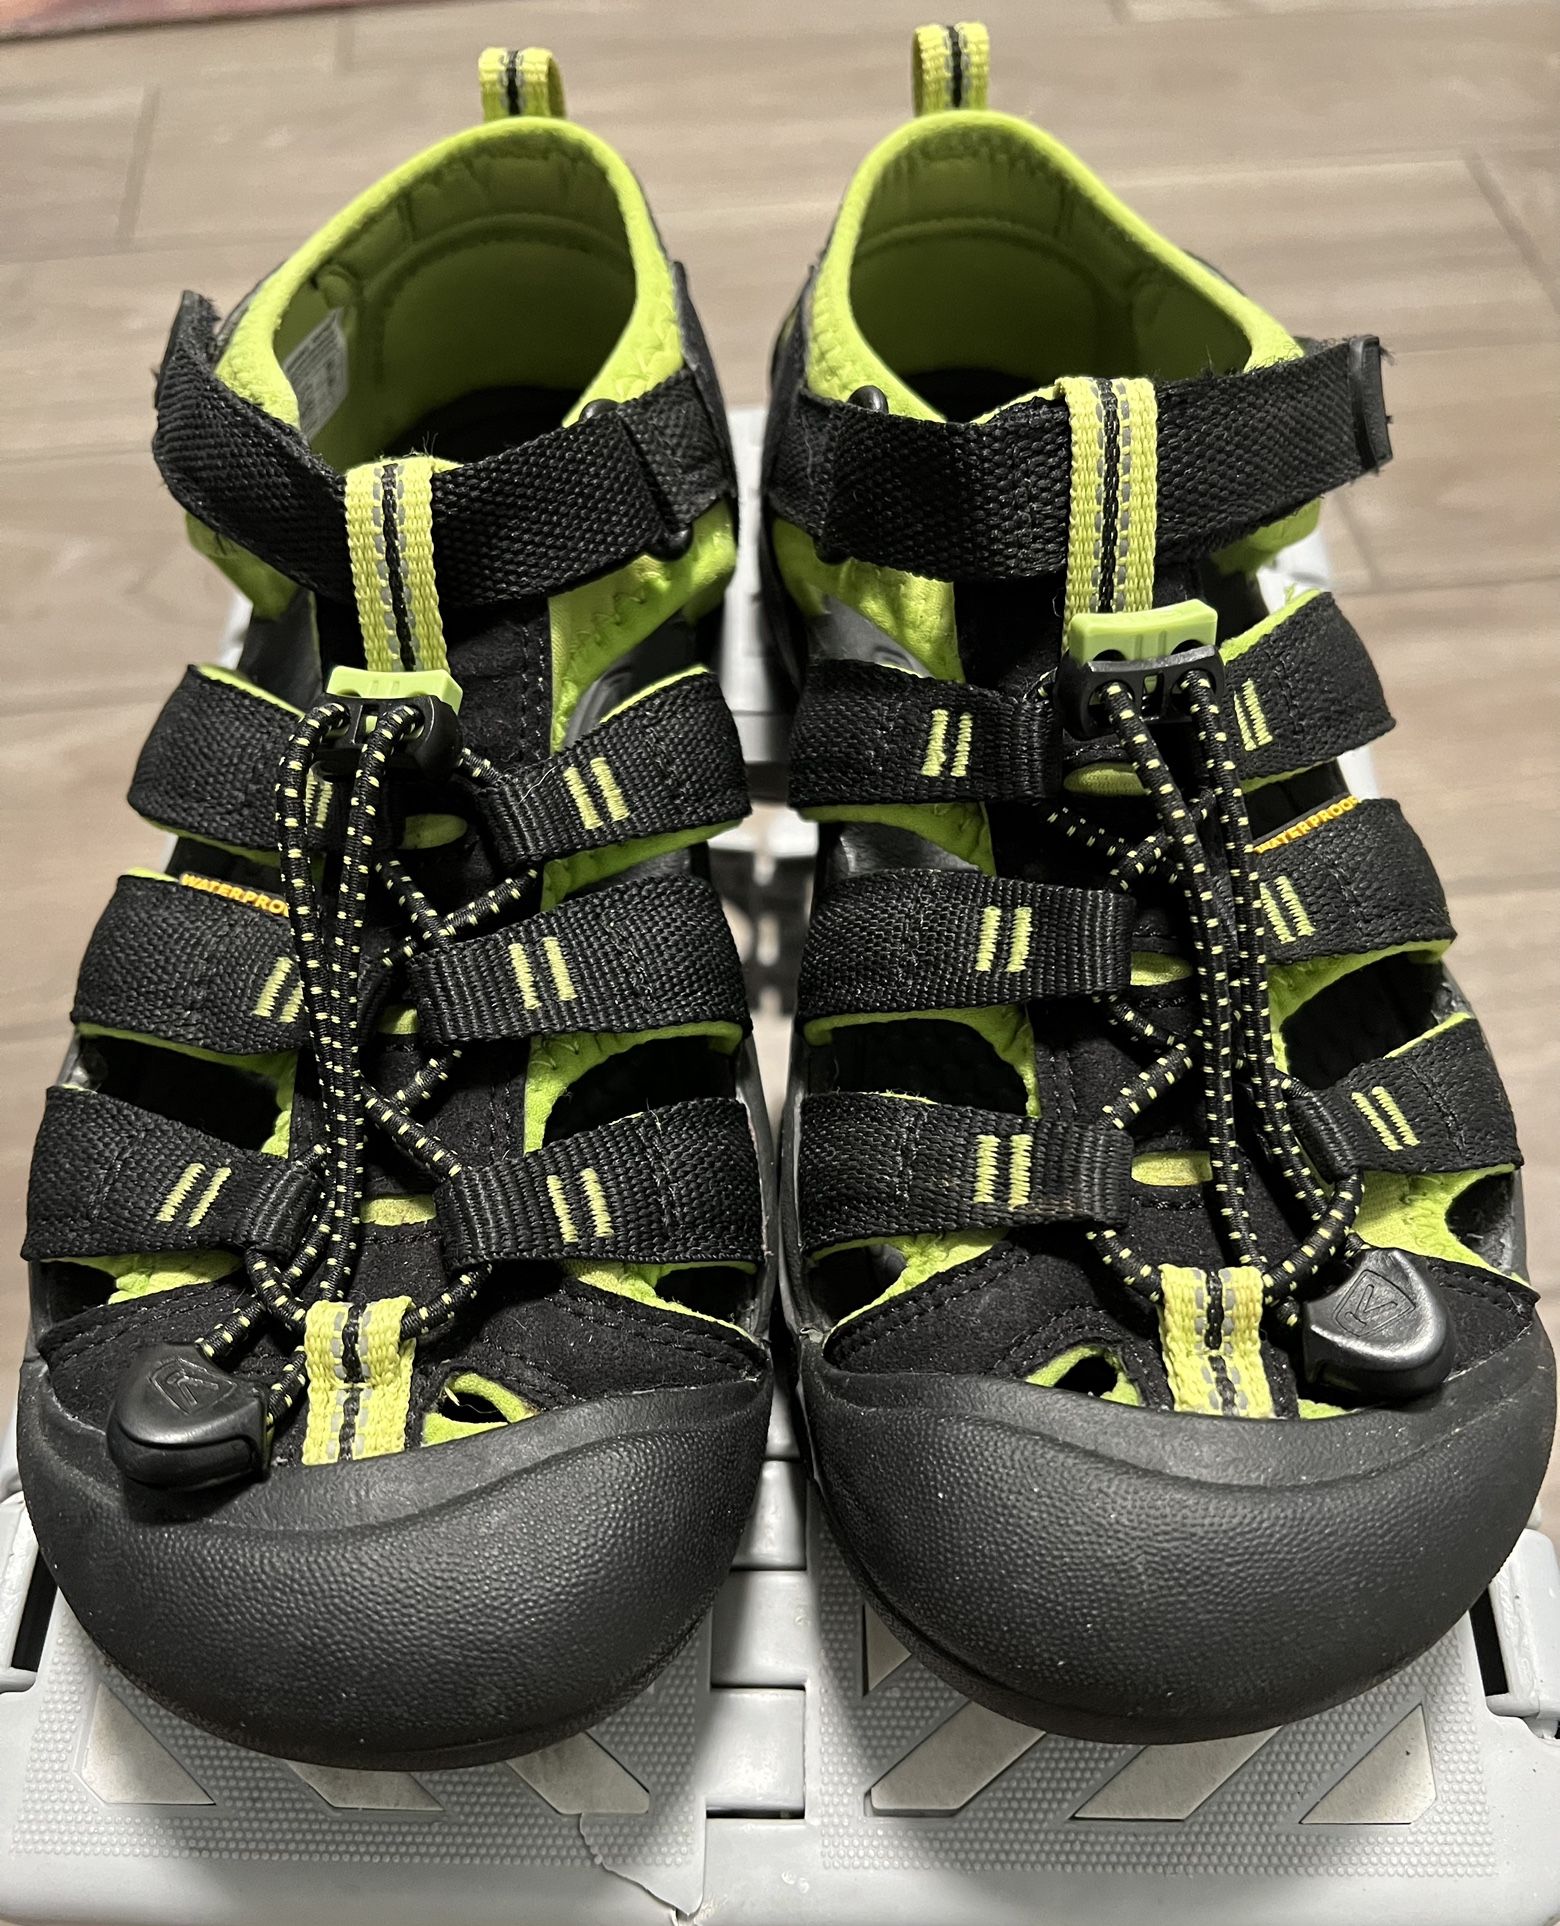 Keen Womens Newport H2 Water Sandals Womens Sz 6.5, Black/Lime Green